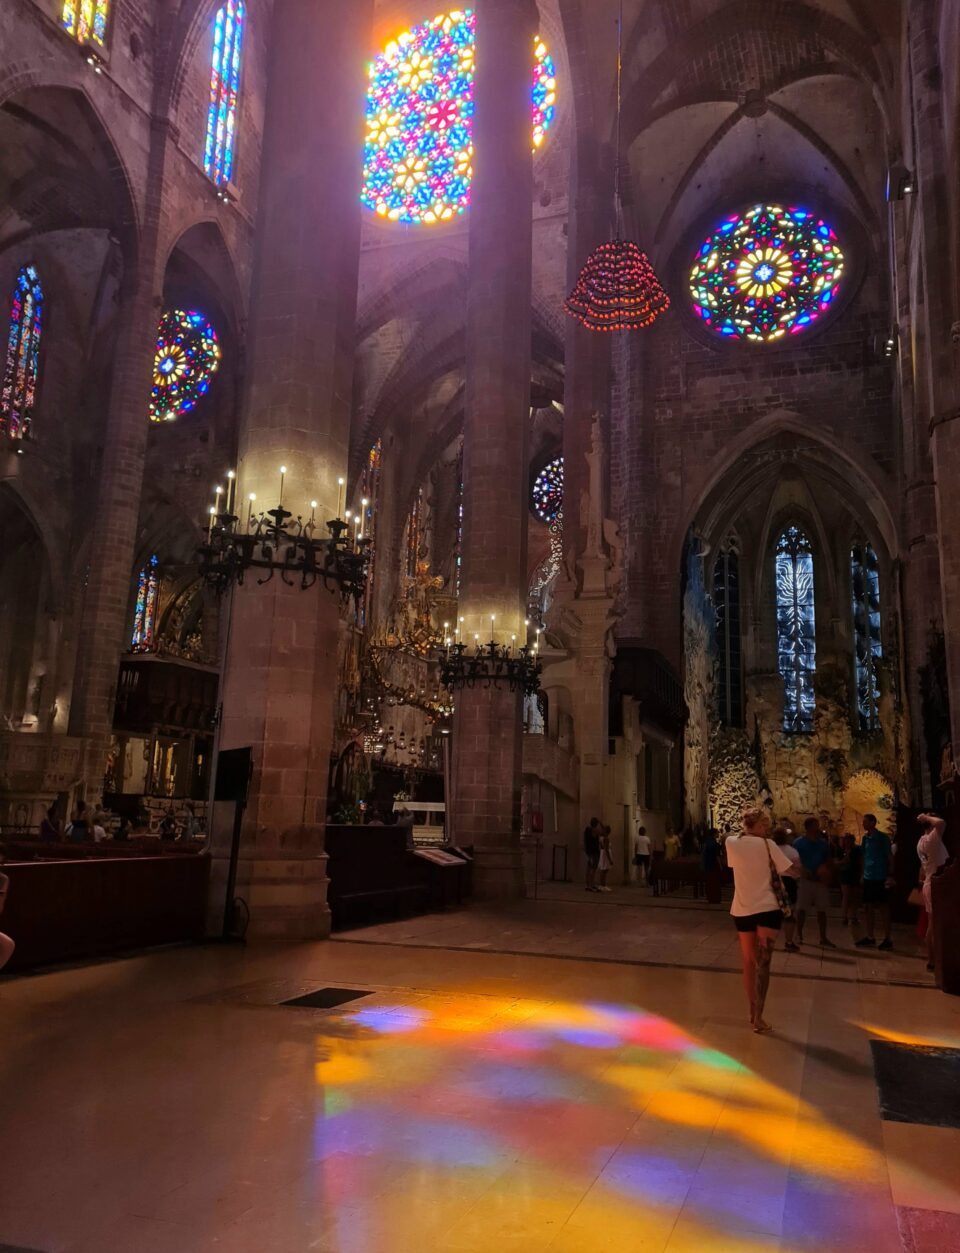 La Cattedrale e la sua magica luce sono sicuramente una visita da non perdere a Palma di Maiorca coi bambini 